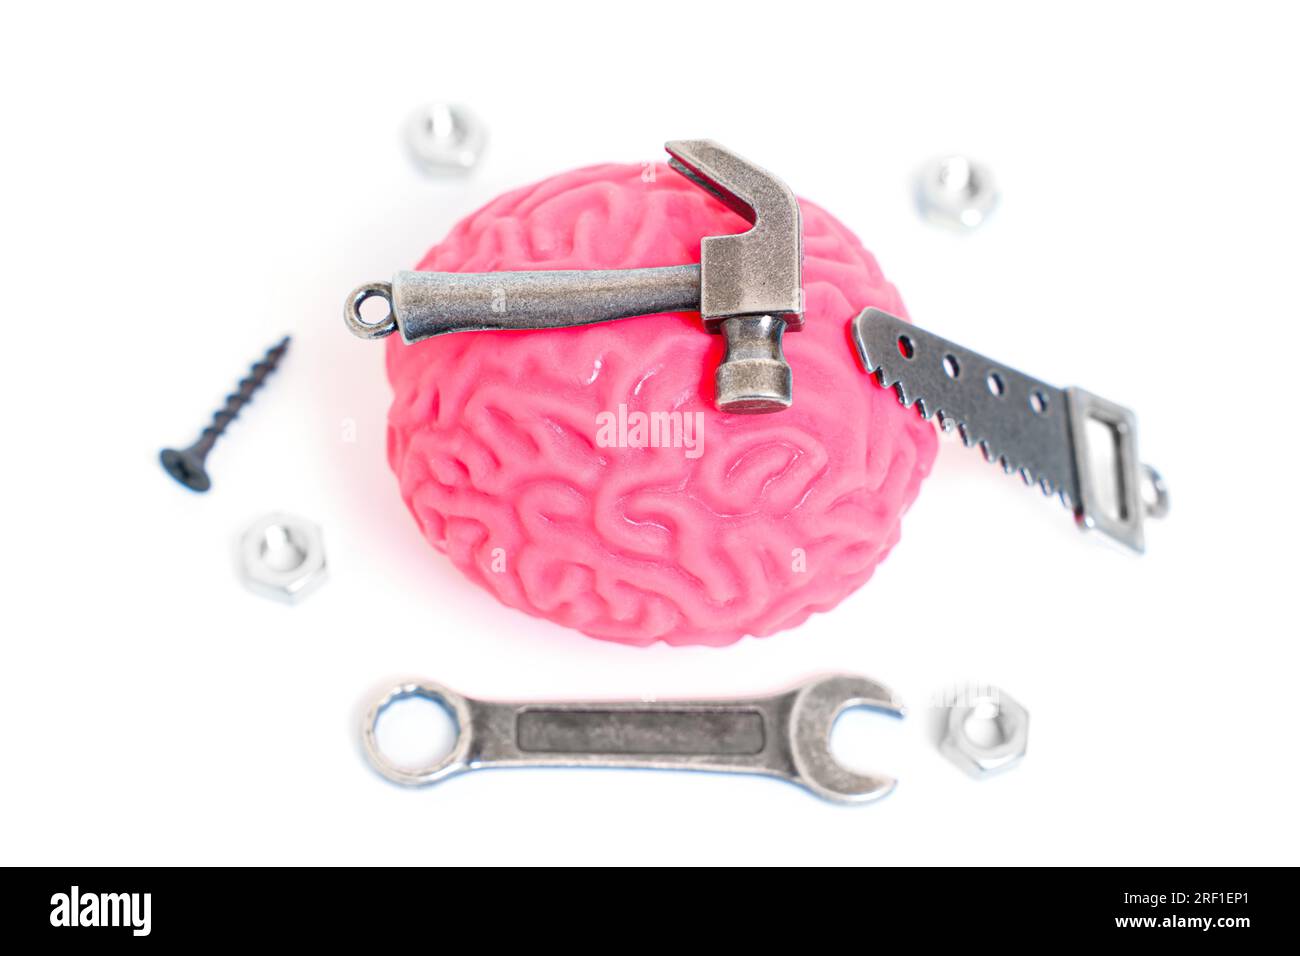 Rosafarbenes menschliches Hirnmodell, begleitet von Miniatur-Handwerkzeugen wie Hammer, Säge, Schraubenschlüssel und Befestigungselementen, isoliert auf weiß. Kreative Selbstverbesserung und Stockfoto